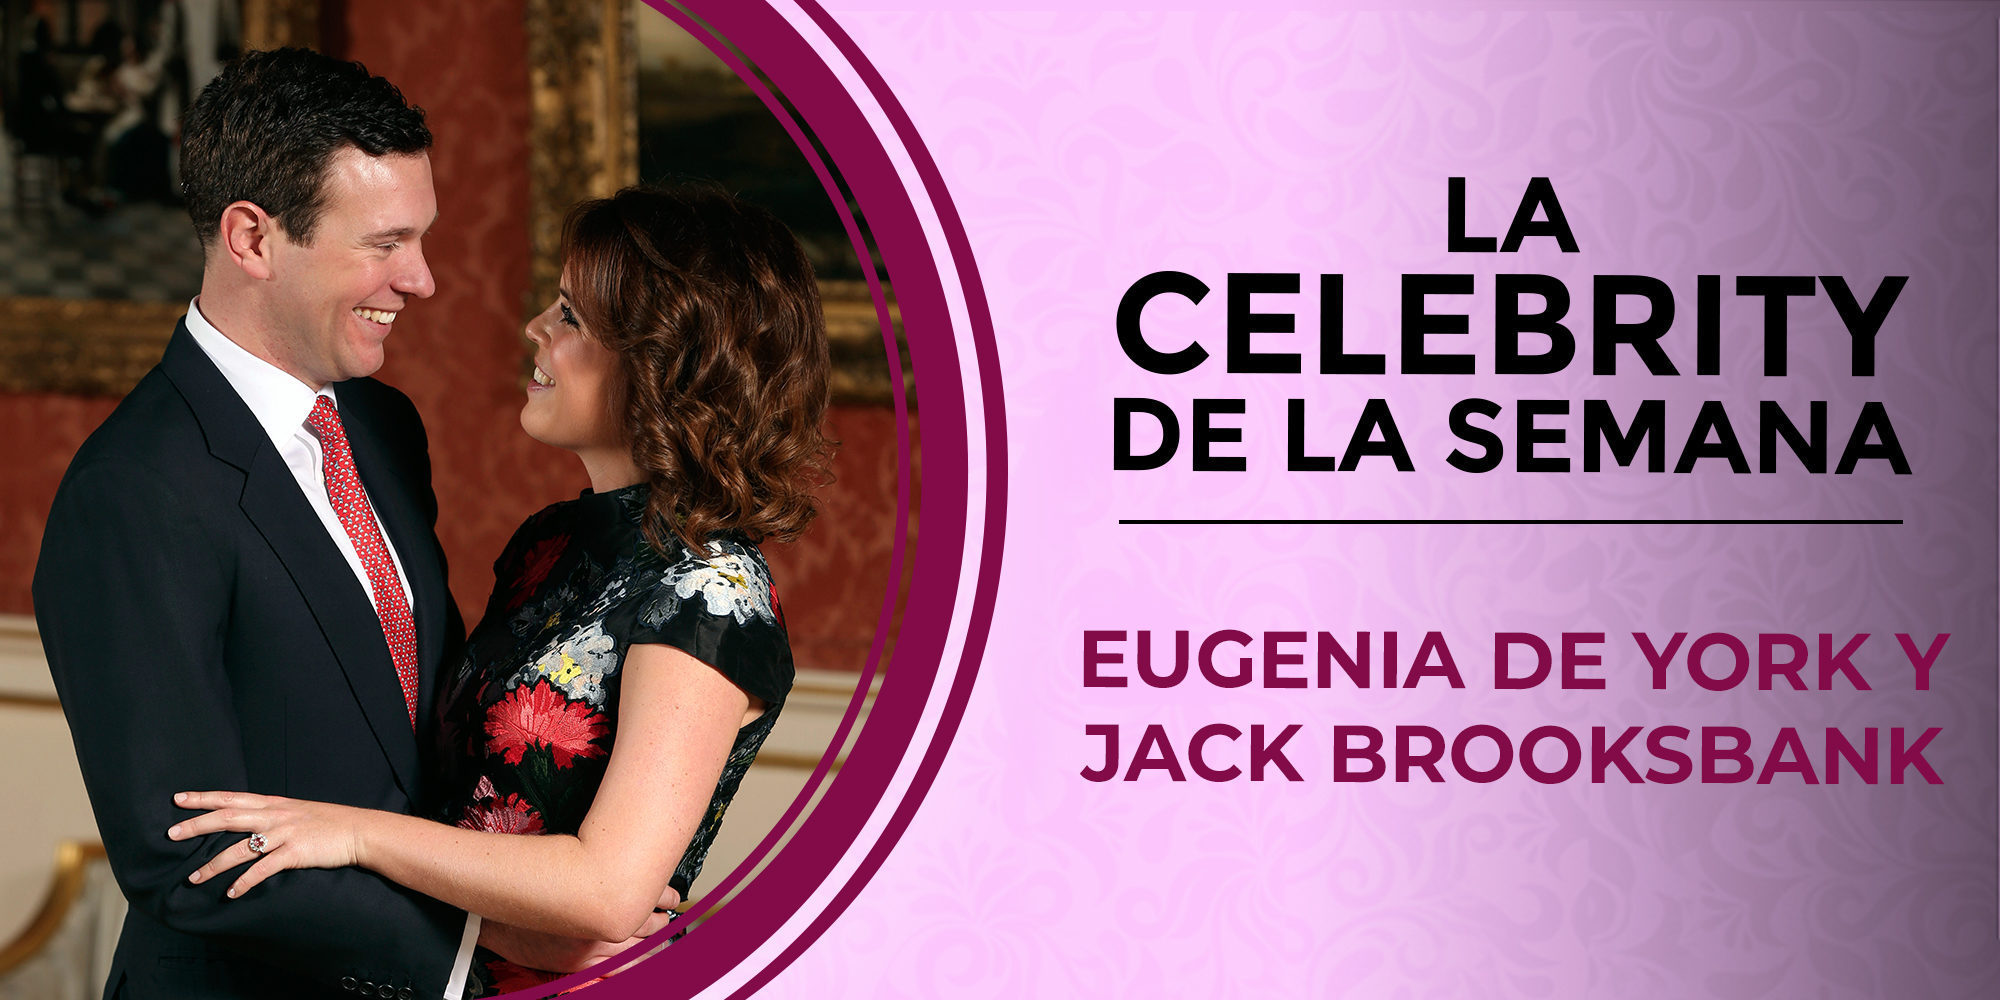 La Princesa Eugenia de York y Jack Brooksbank, las celebs de la semana por su compromiso y su boda retrasada